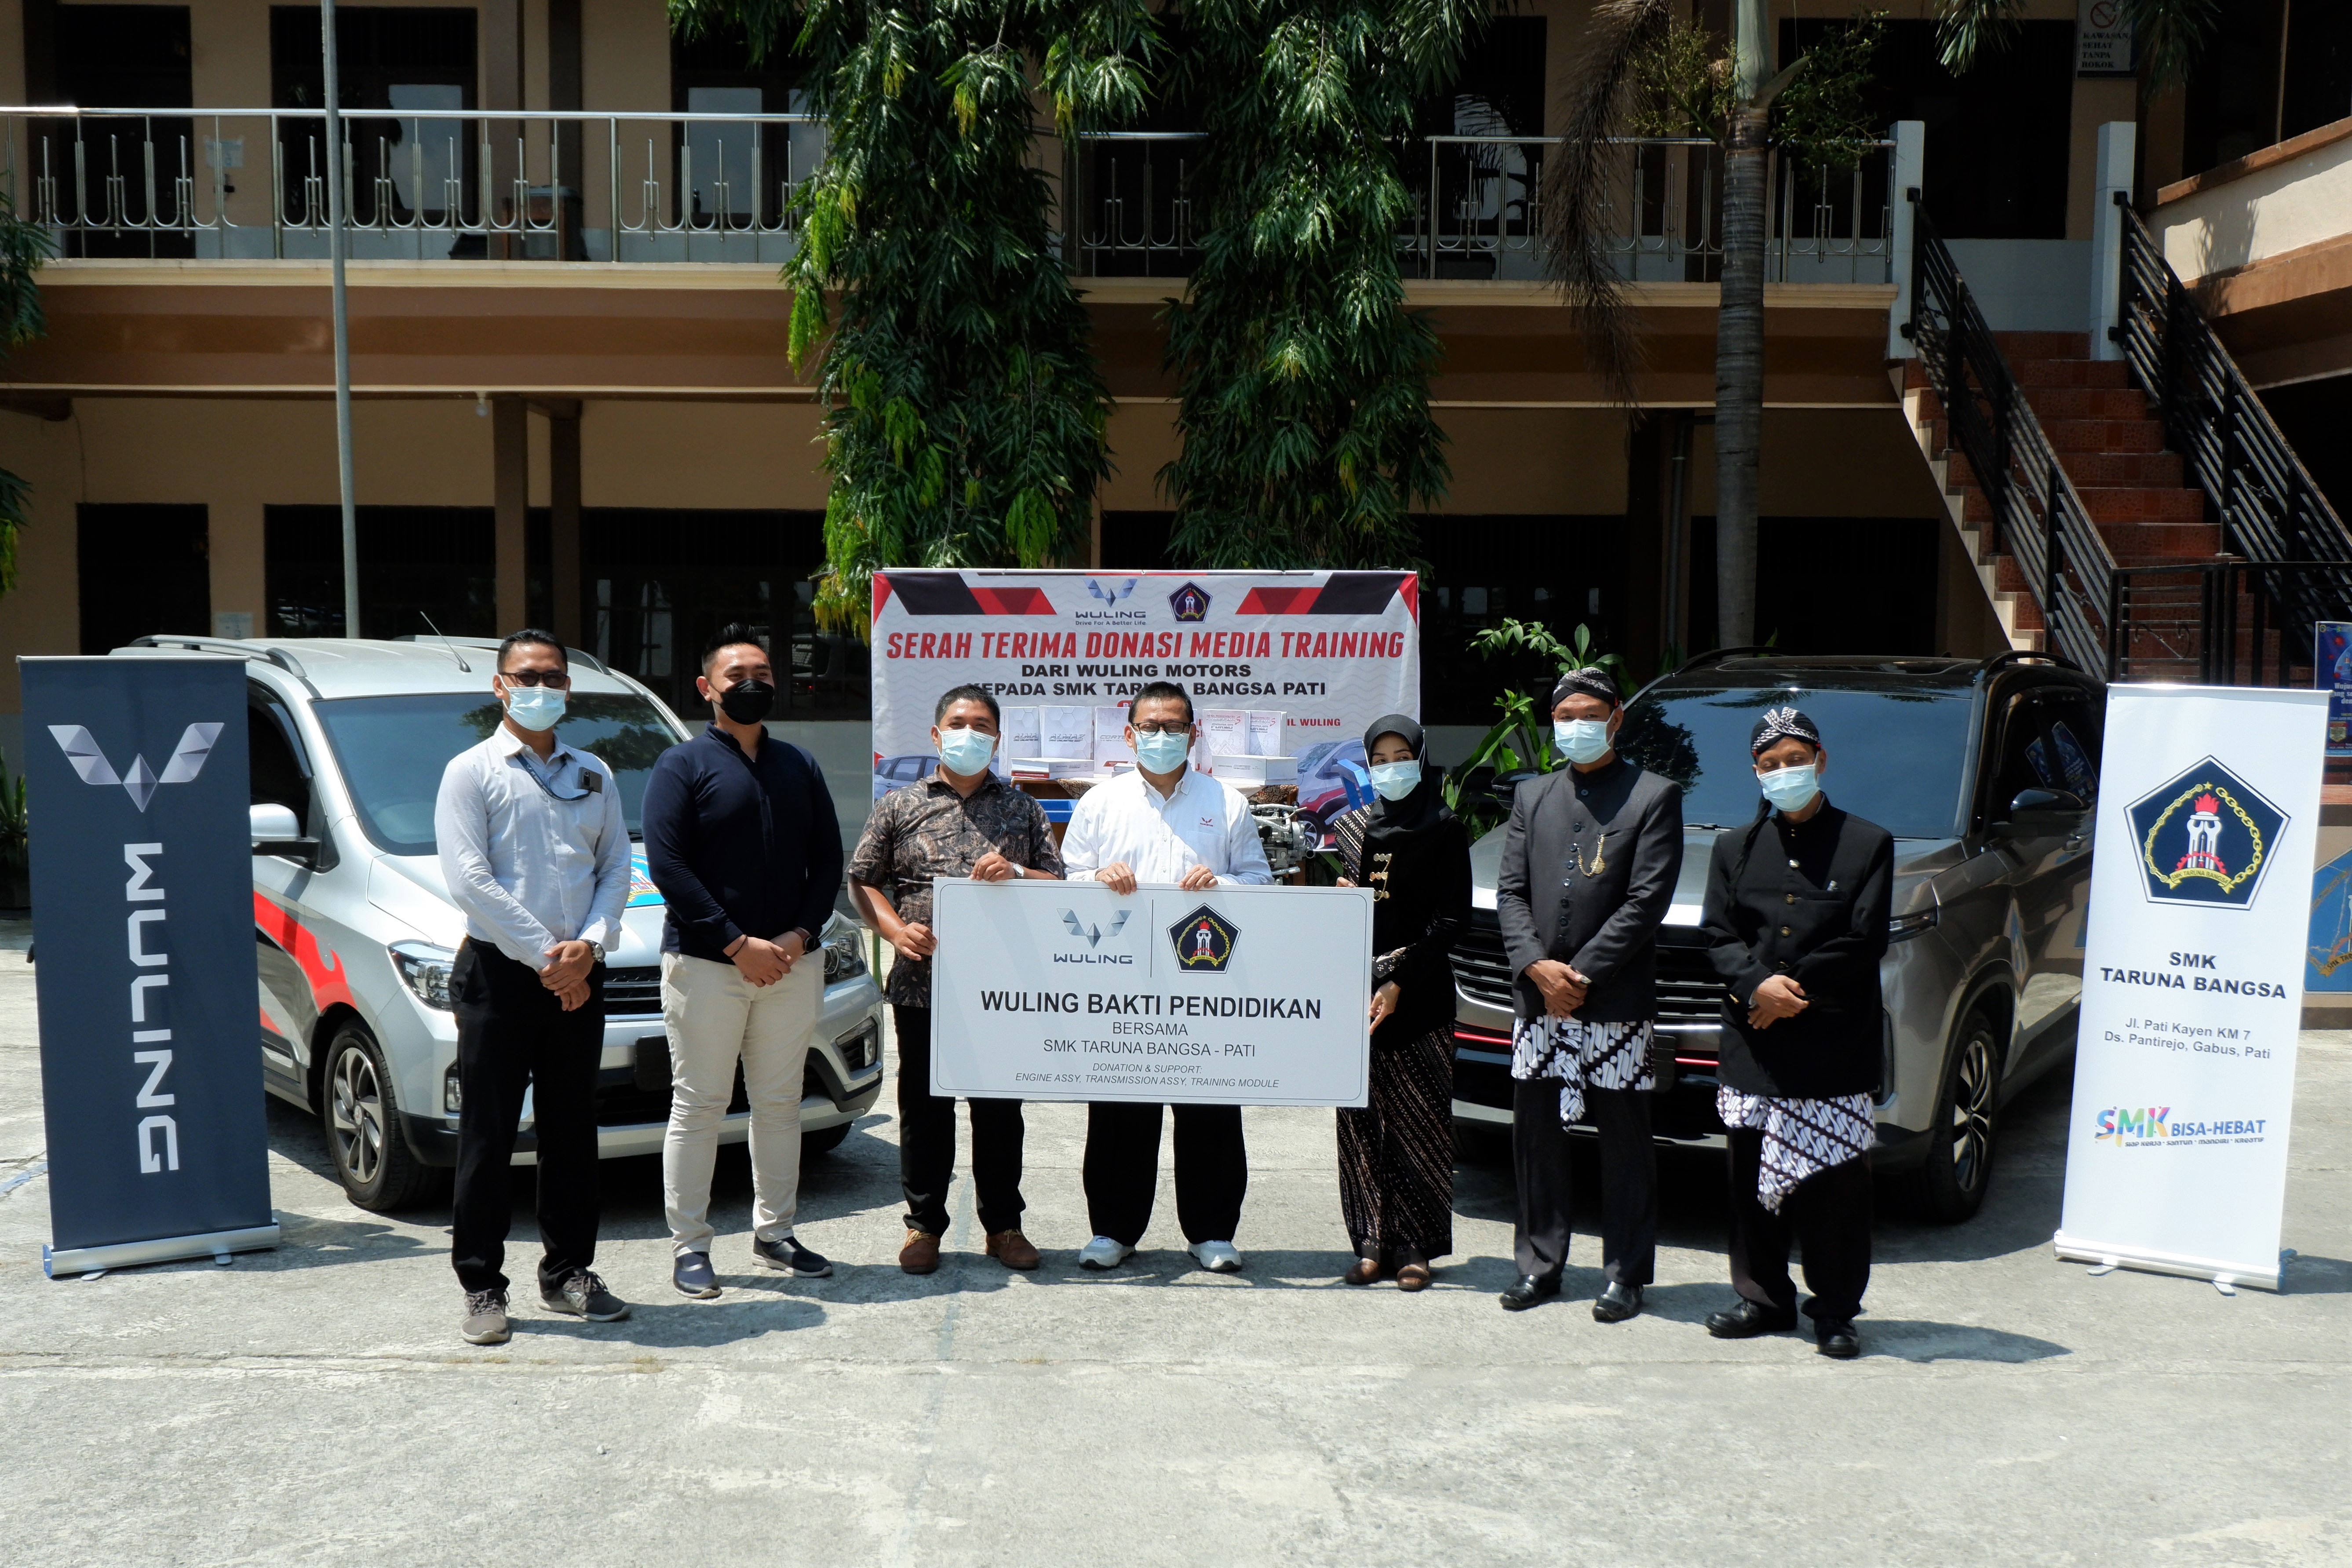 Image Wuling Bakti Pendidikan Program Officially Runs at SMK Taruna Bangsa